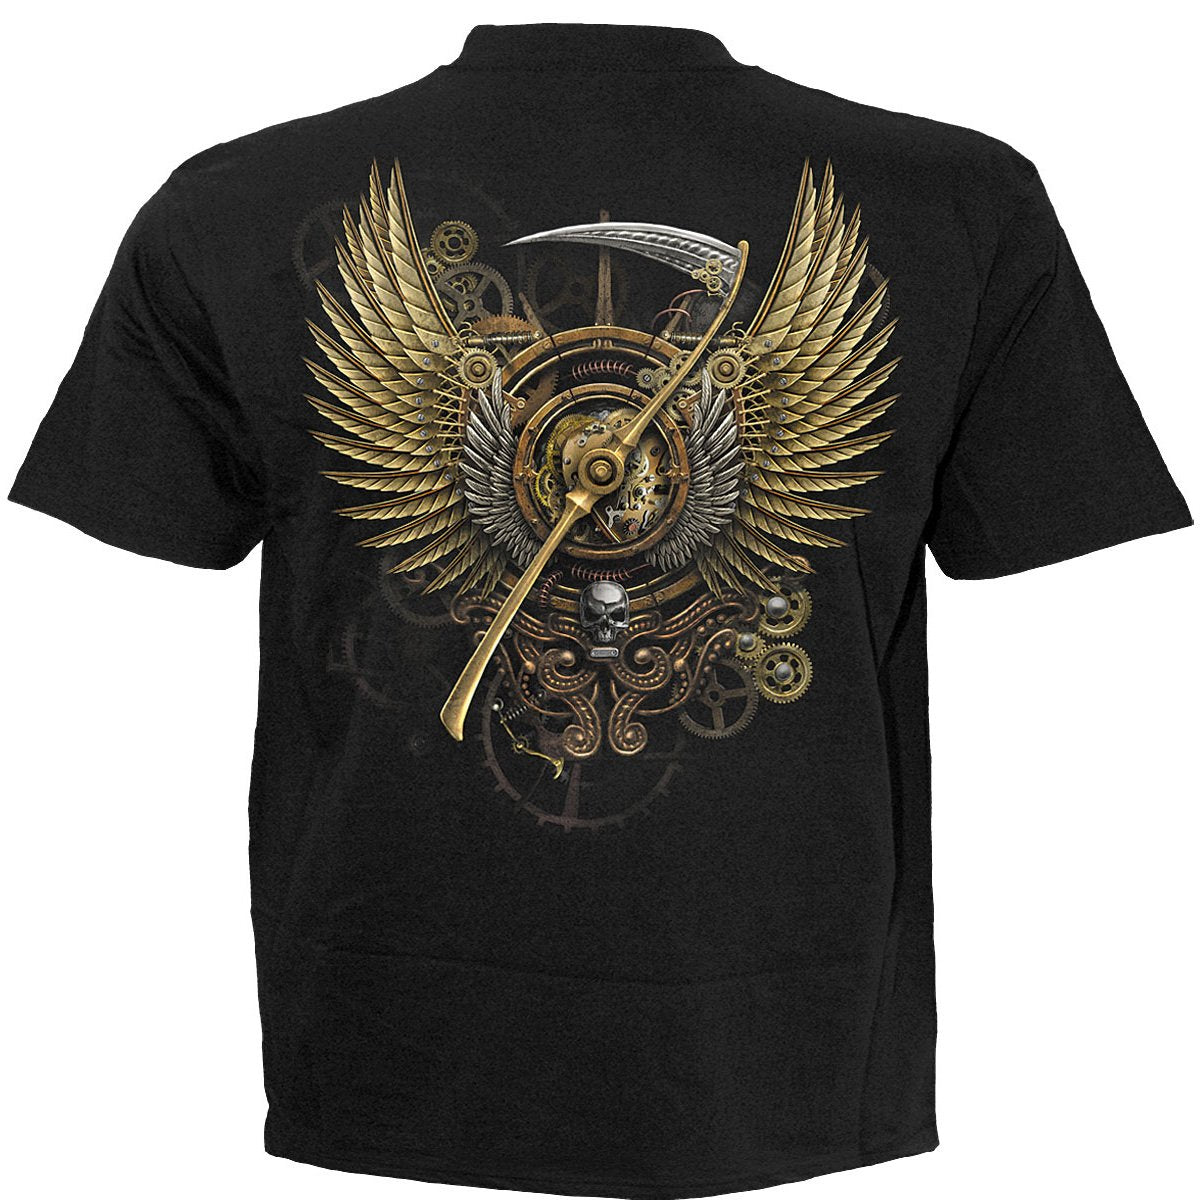 STEAM PUNK REAPER - T-Shirt Black - Spiral USA